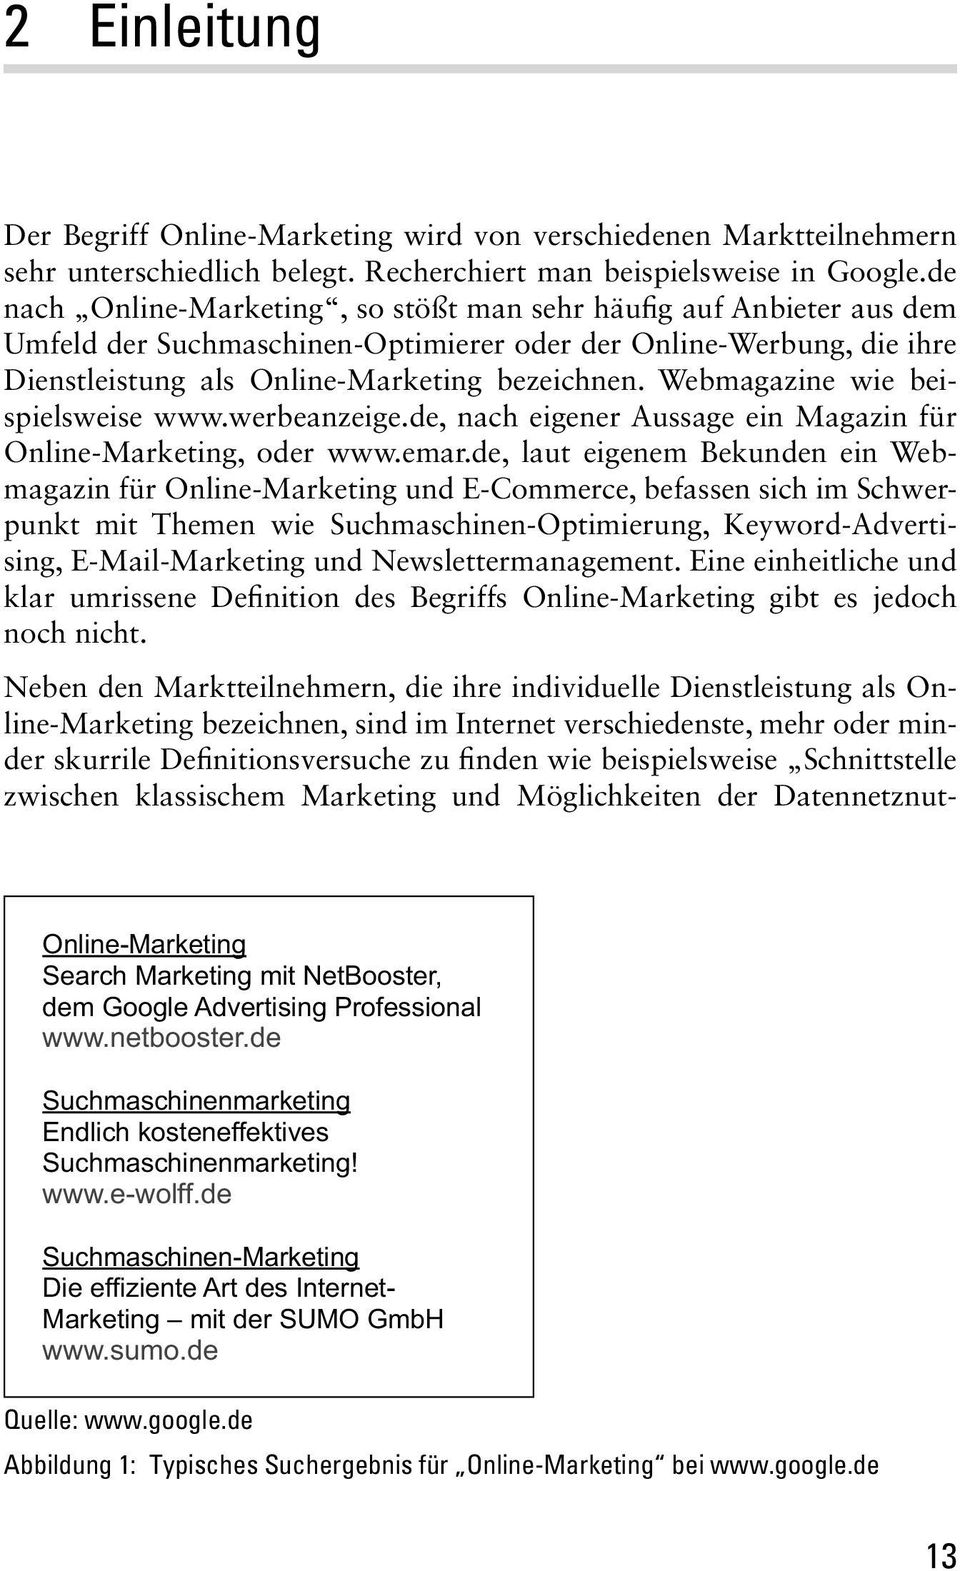 Webmagazine wie beispielsweise www.werbeanzeige.de, nach eigener Aussage ein Magazin für Online-Marketing, oder www.emar.